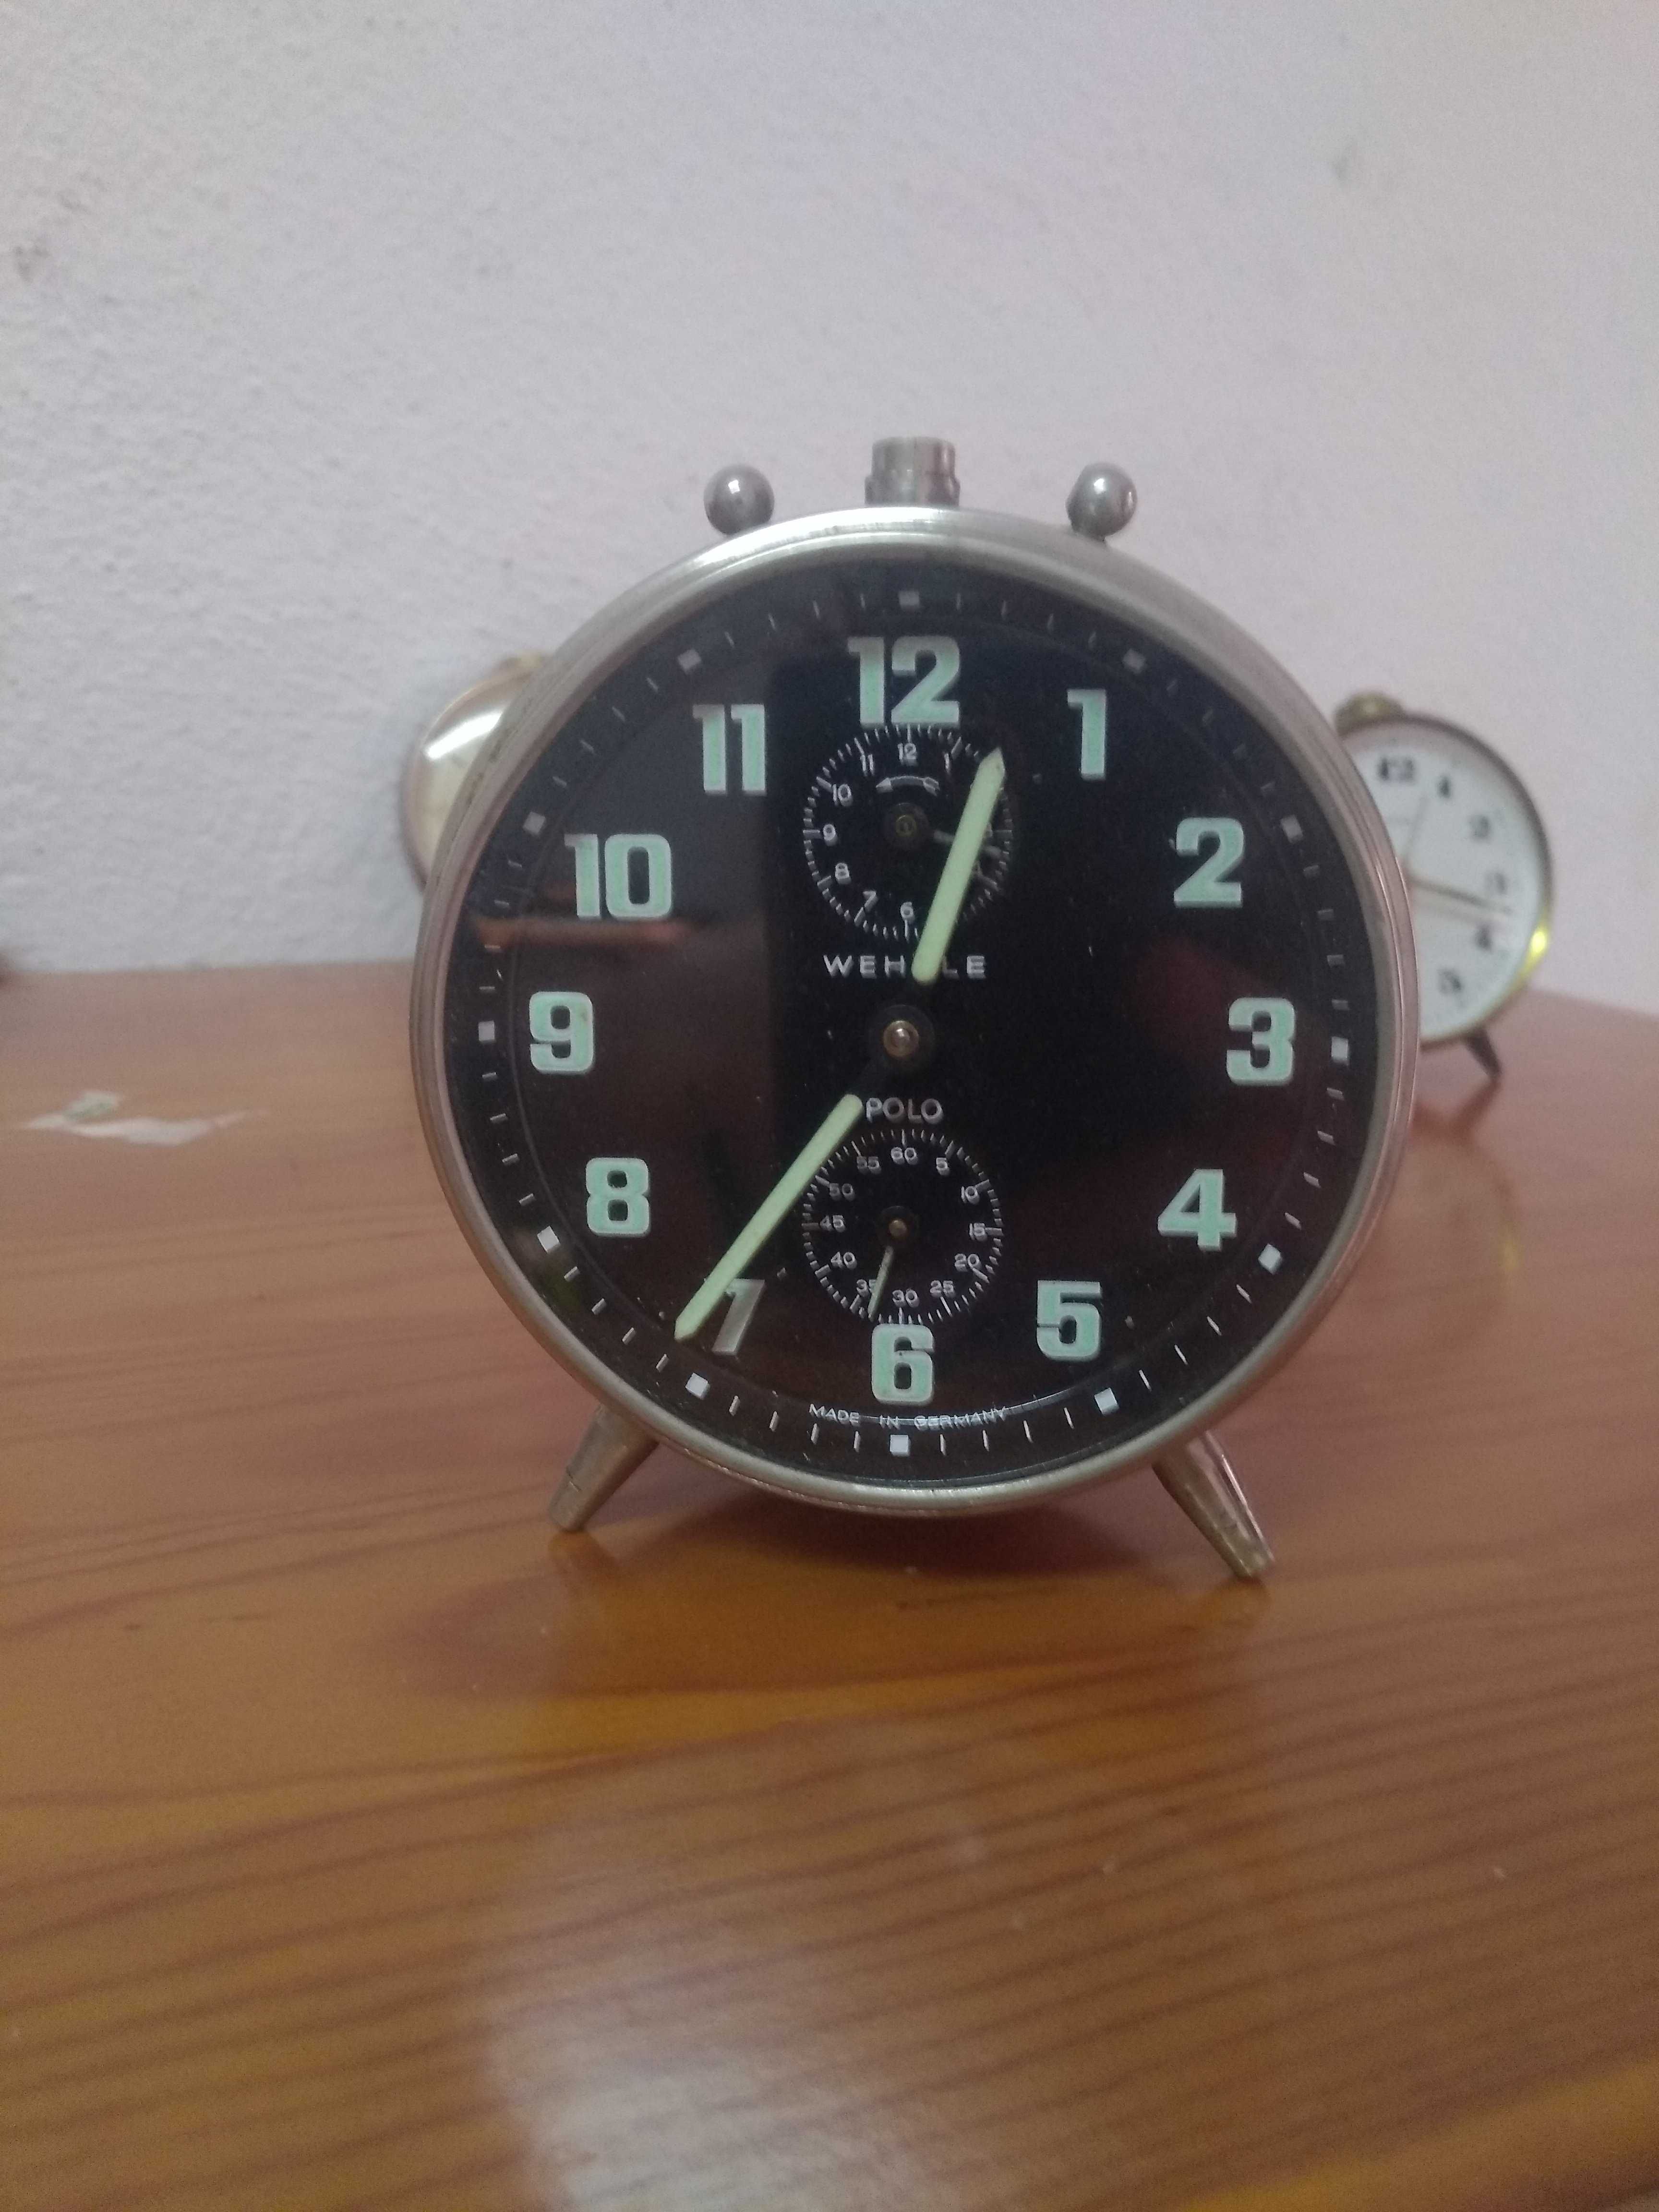 Relógio despertador marca wehrle modelo polo made in Germany